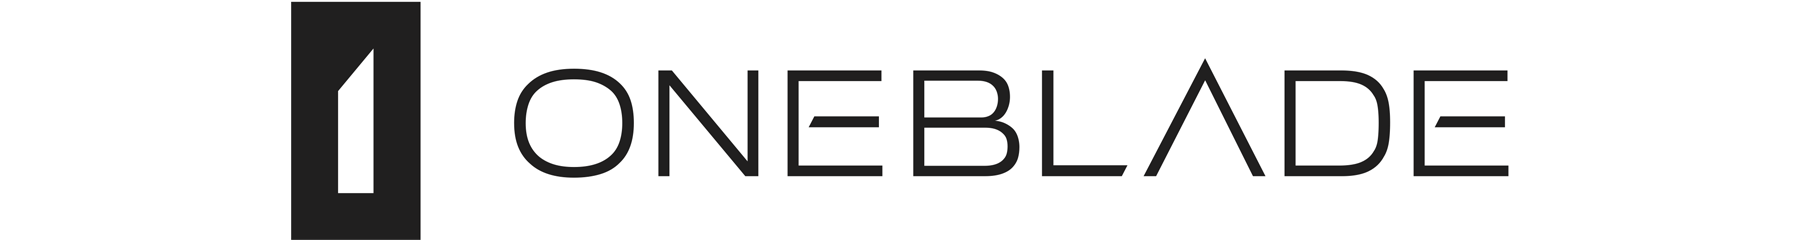 OneBlade logo